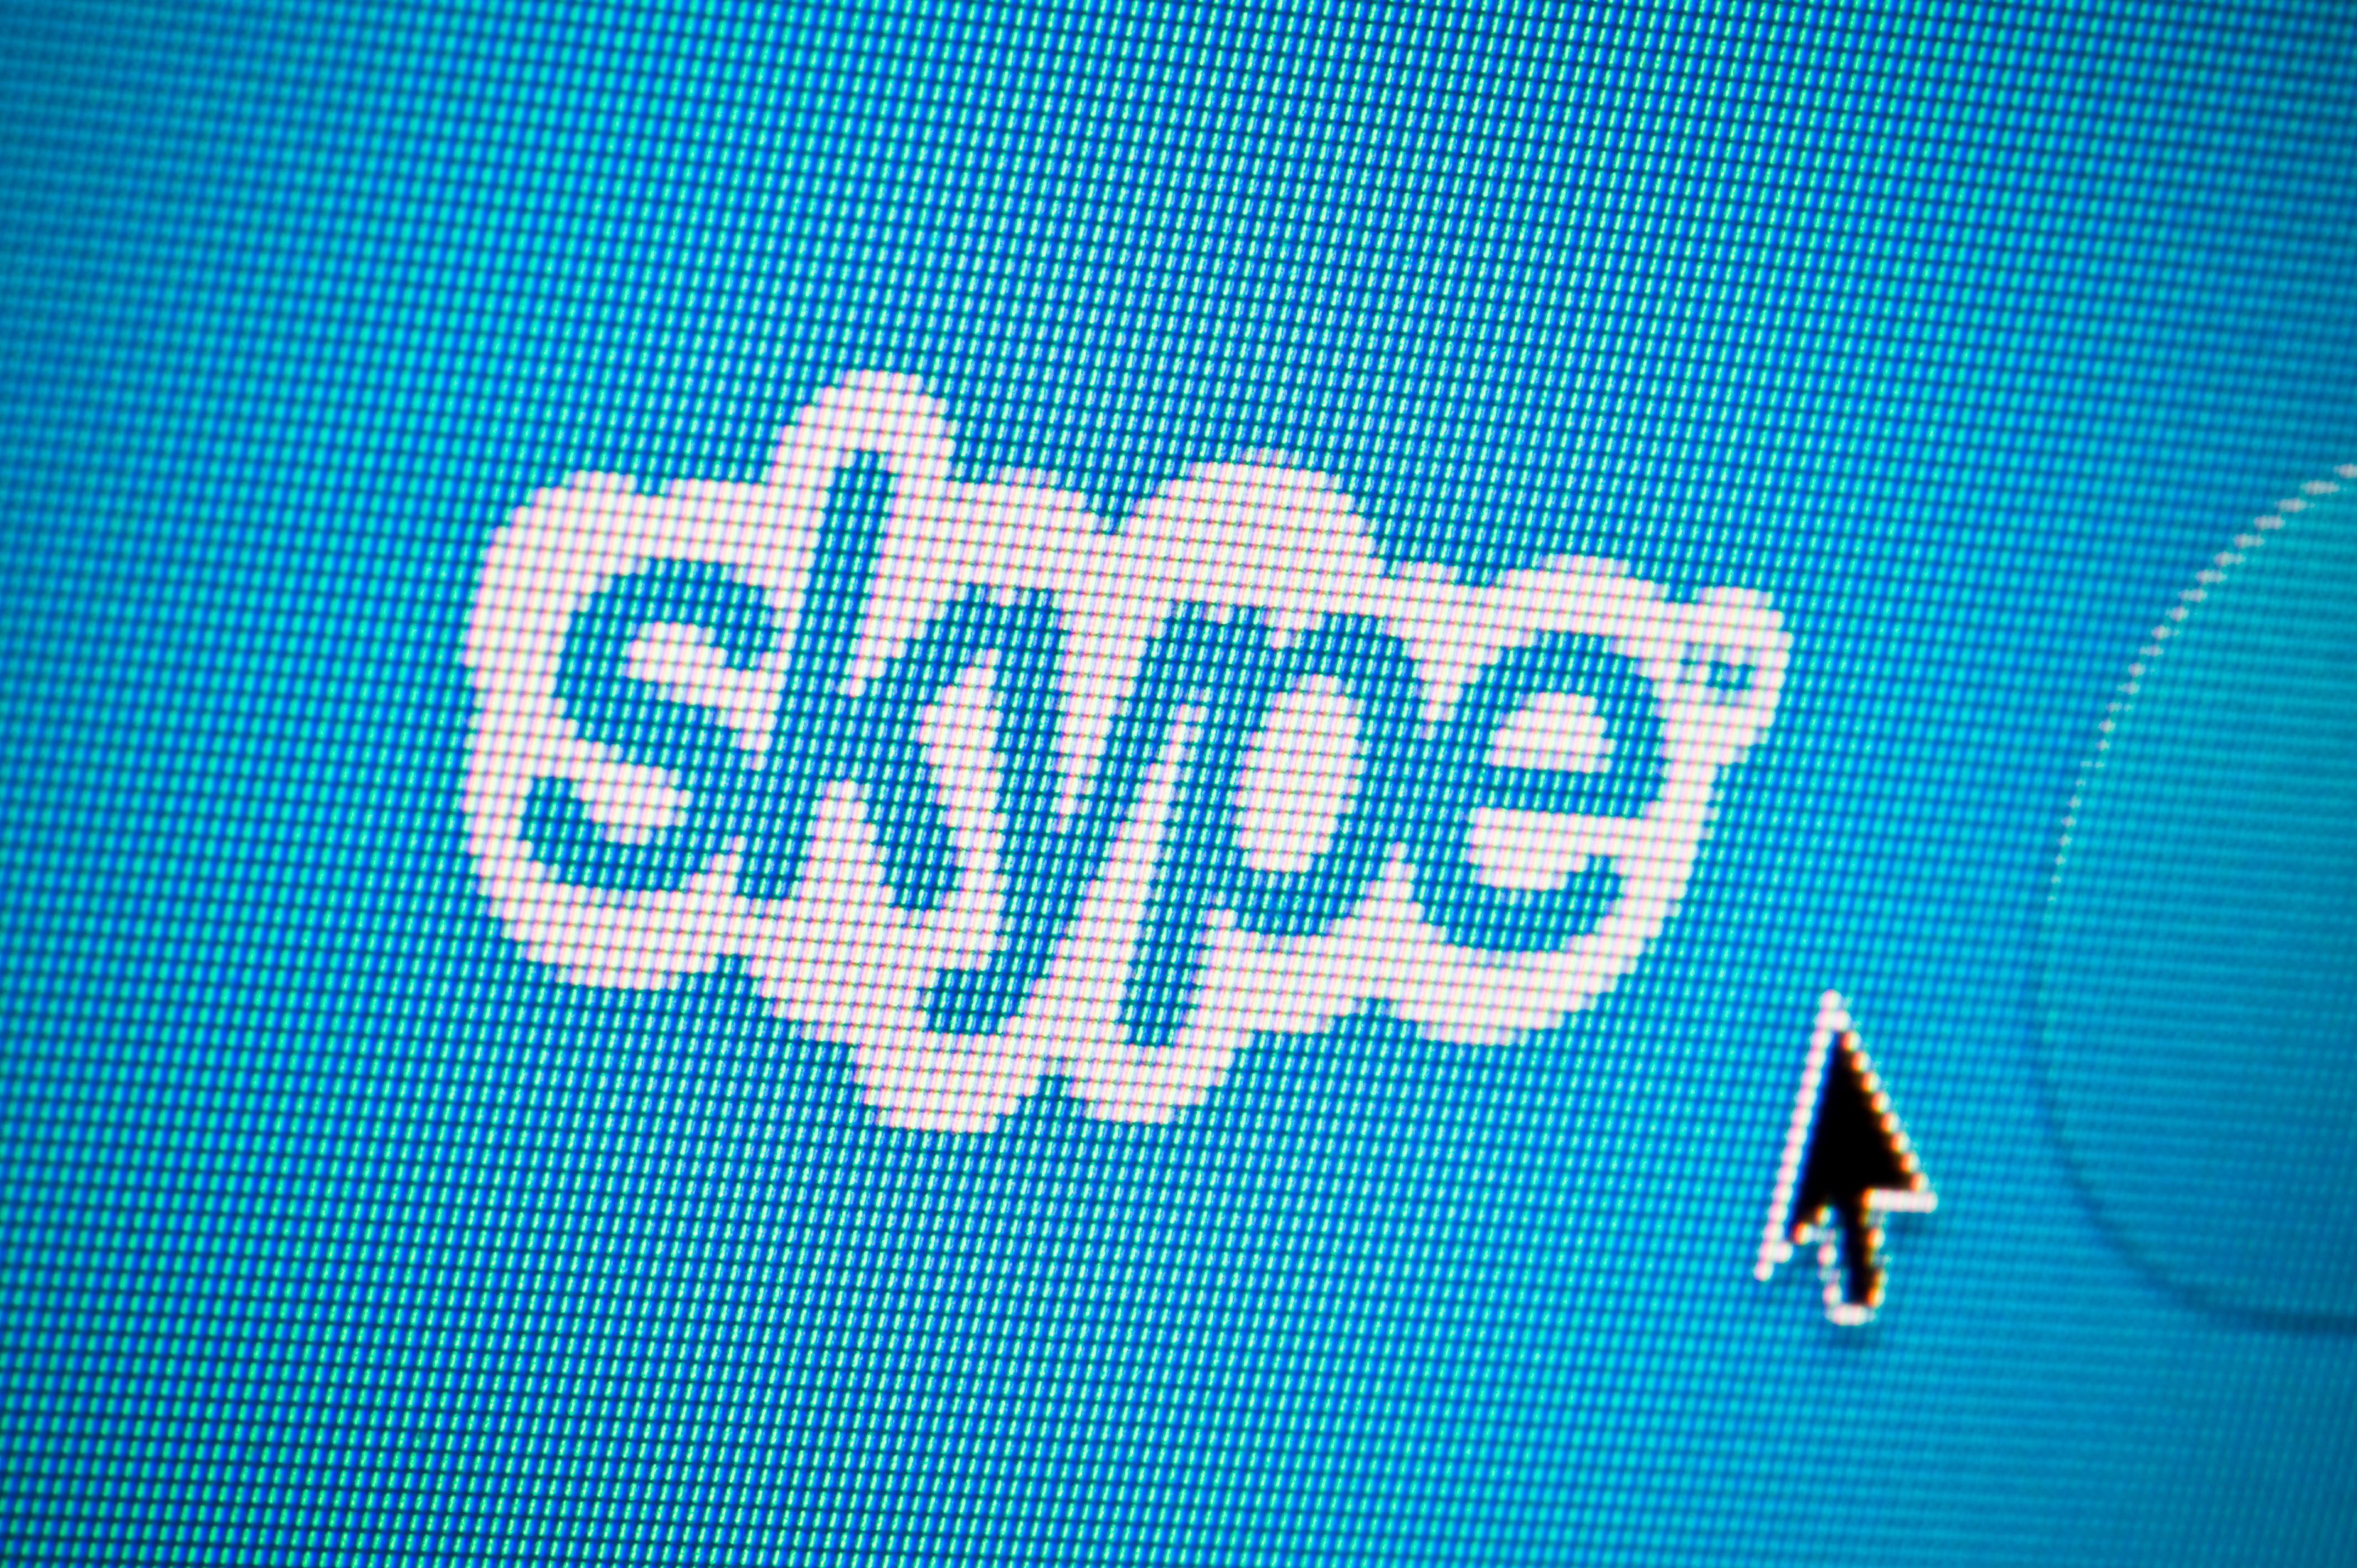  Masalahnya adalah beberapa orang berpikir Microsoft belum dengan jelas menyatakan bahwa mereka akan mendengarkan sebagian Skype percakapan